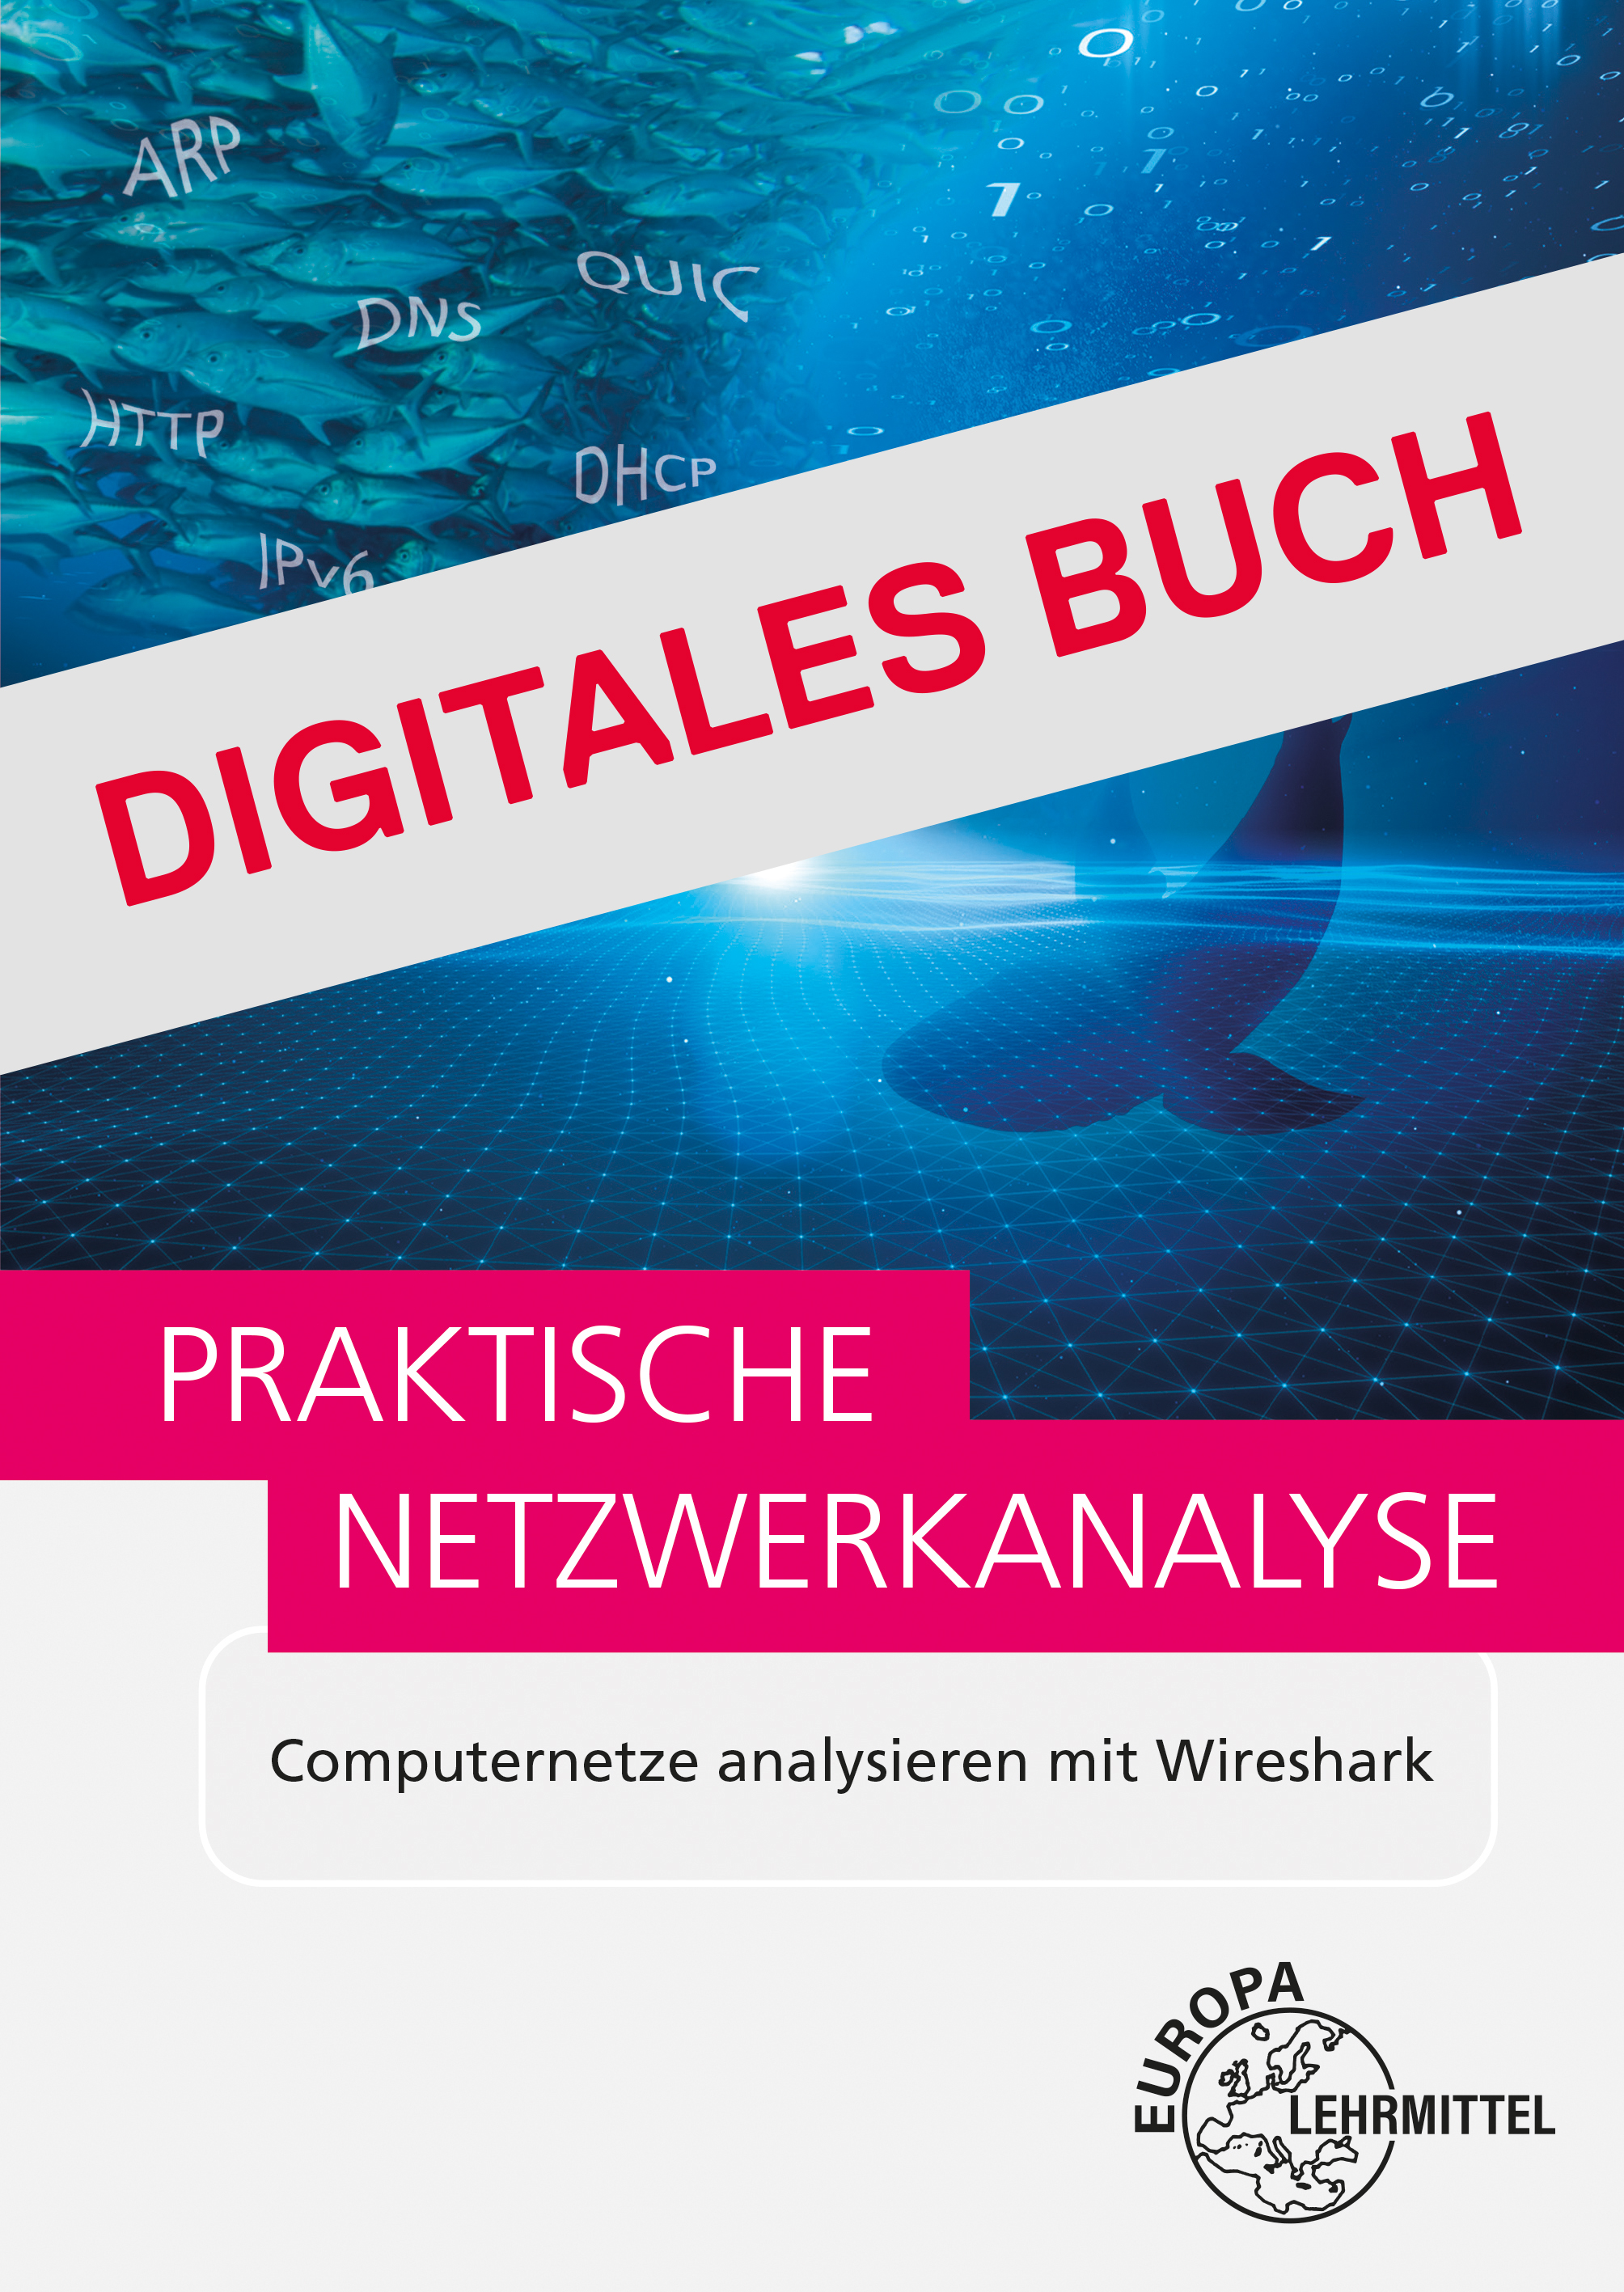 Praktische Netzwerkanalyse - Computernetze analysieren mit Wireshark Digitales Buch 